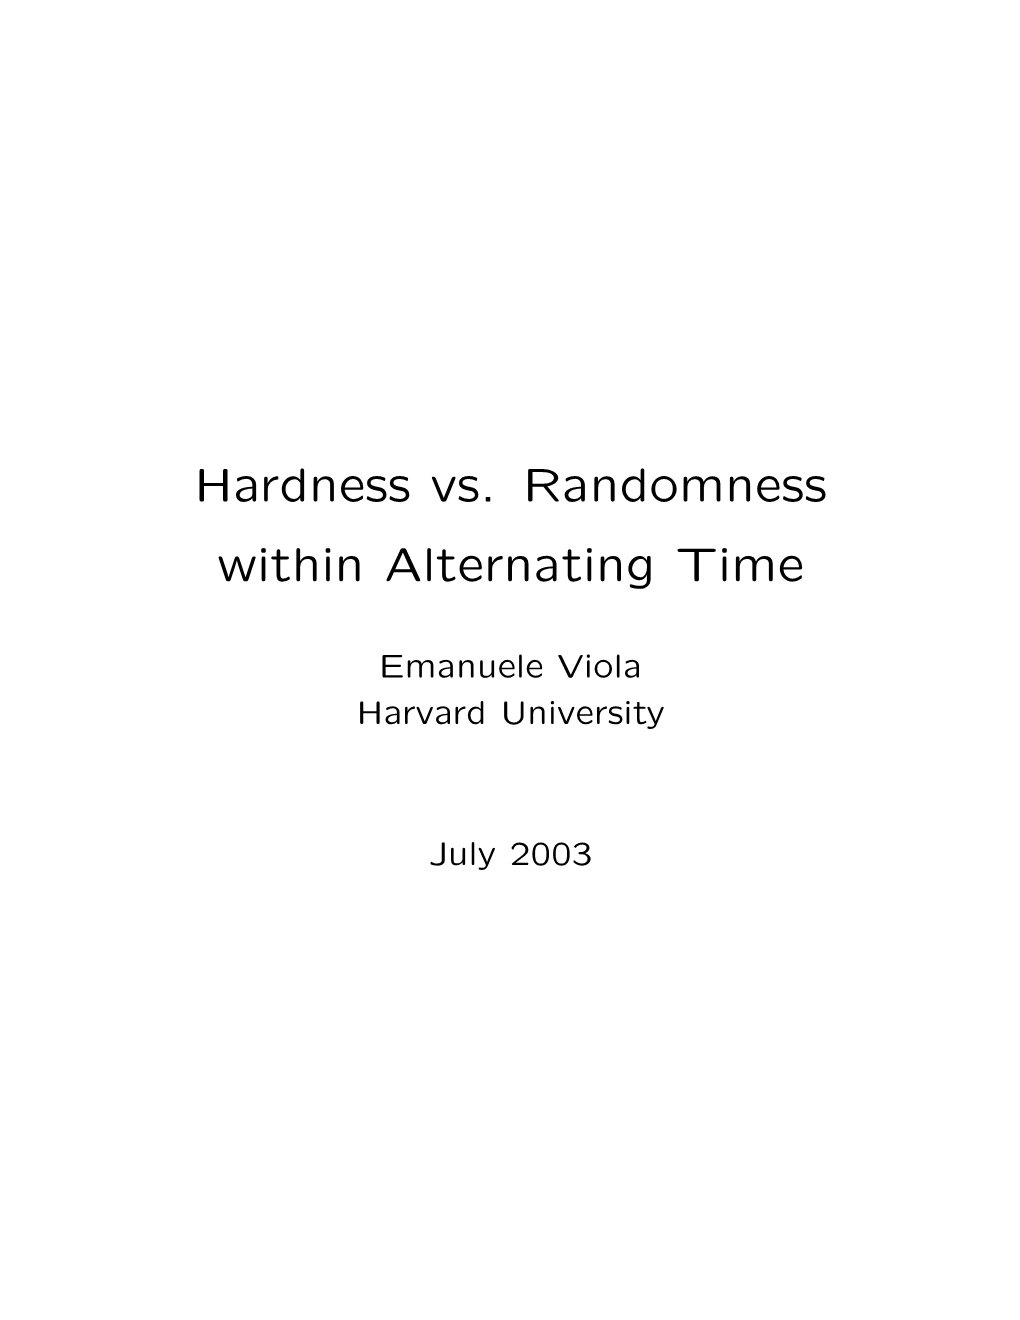 Hardness Vs. Randomness Within Alternating Time